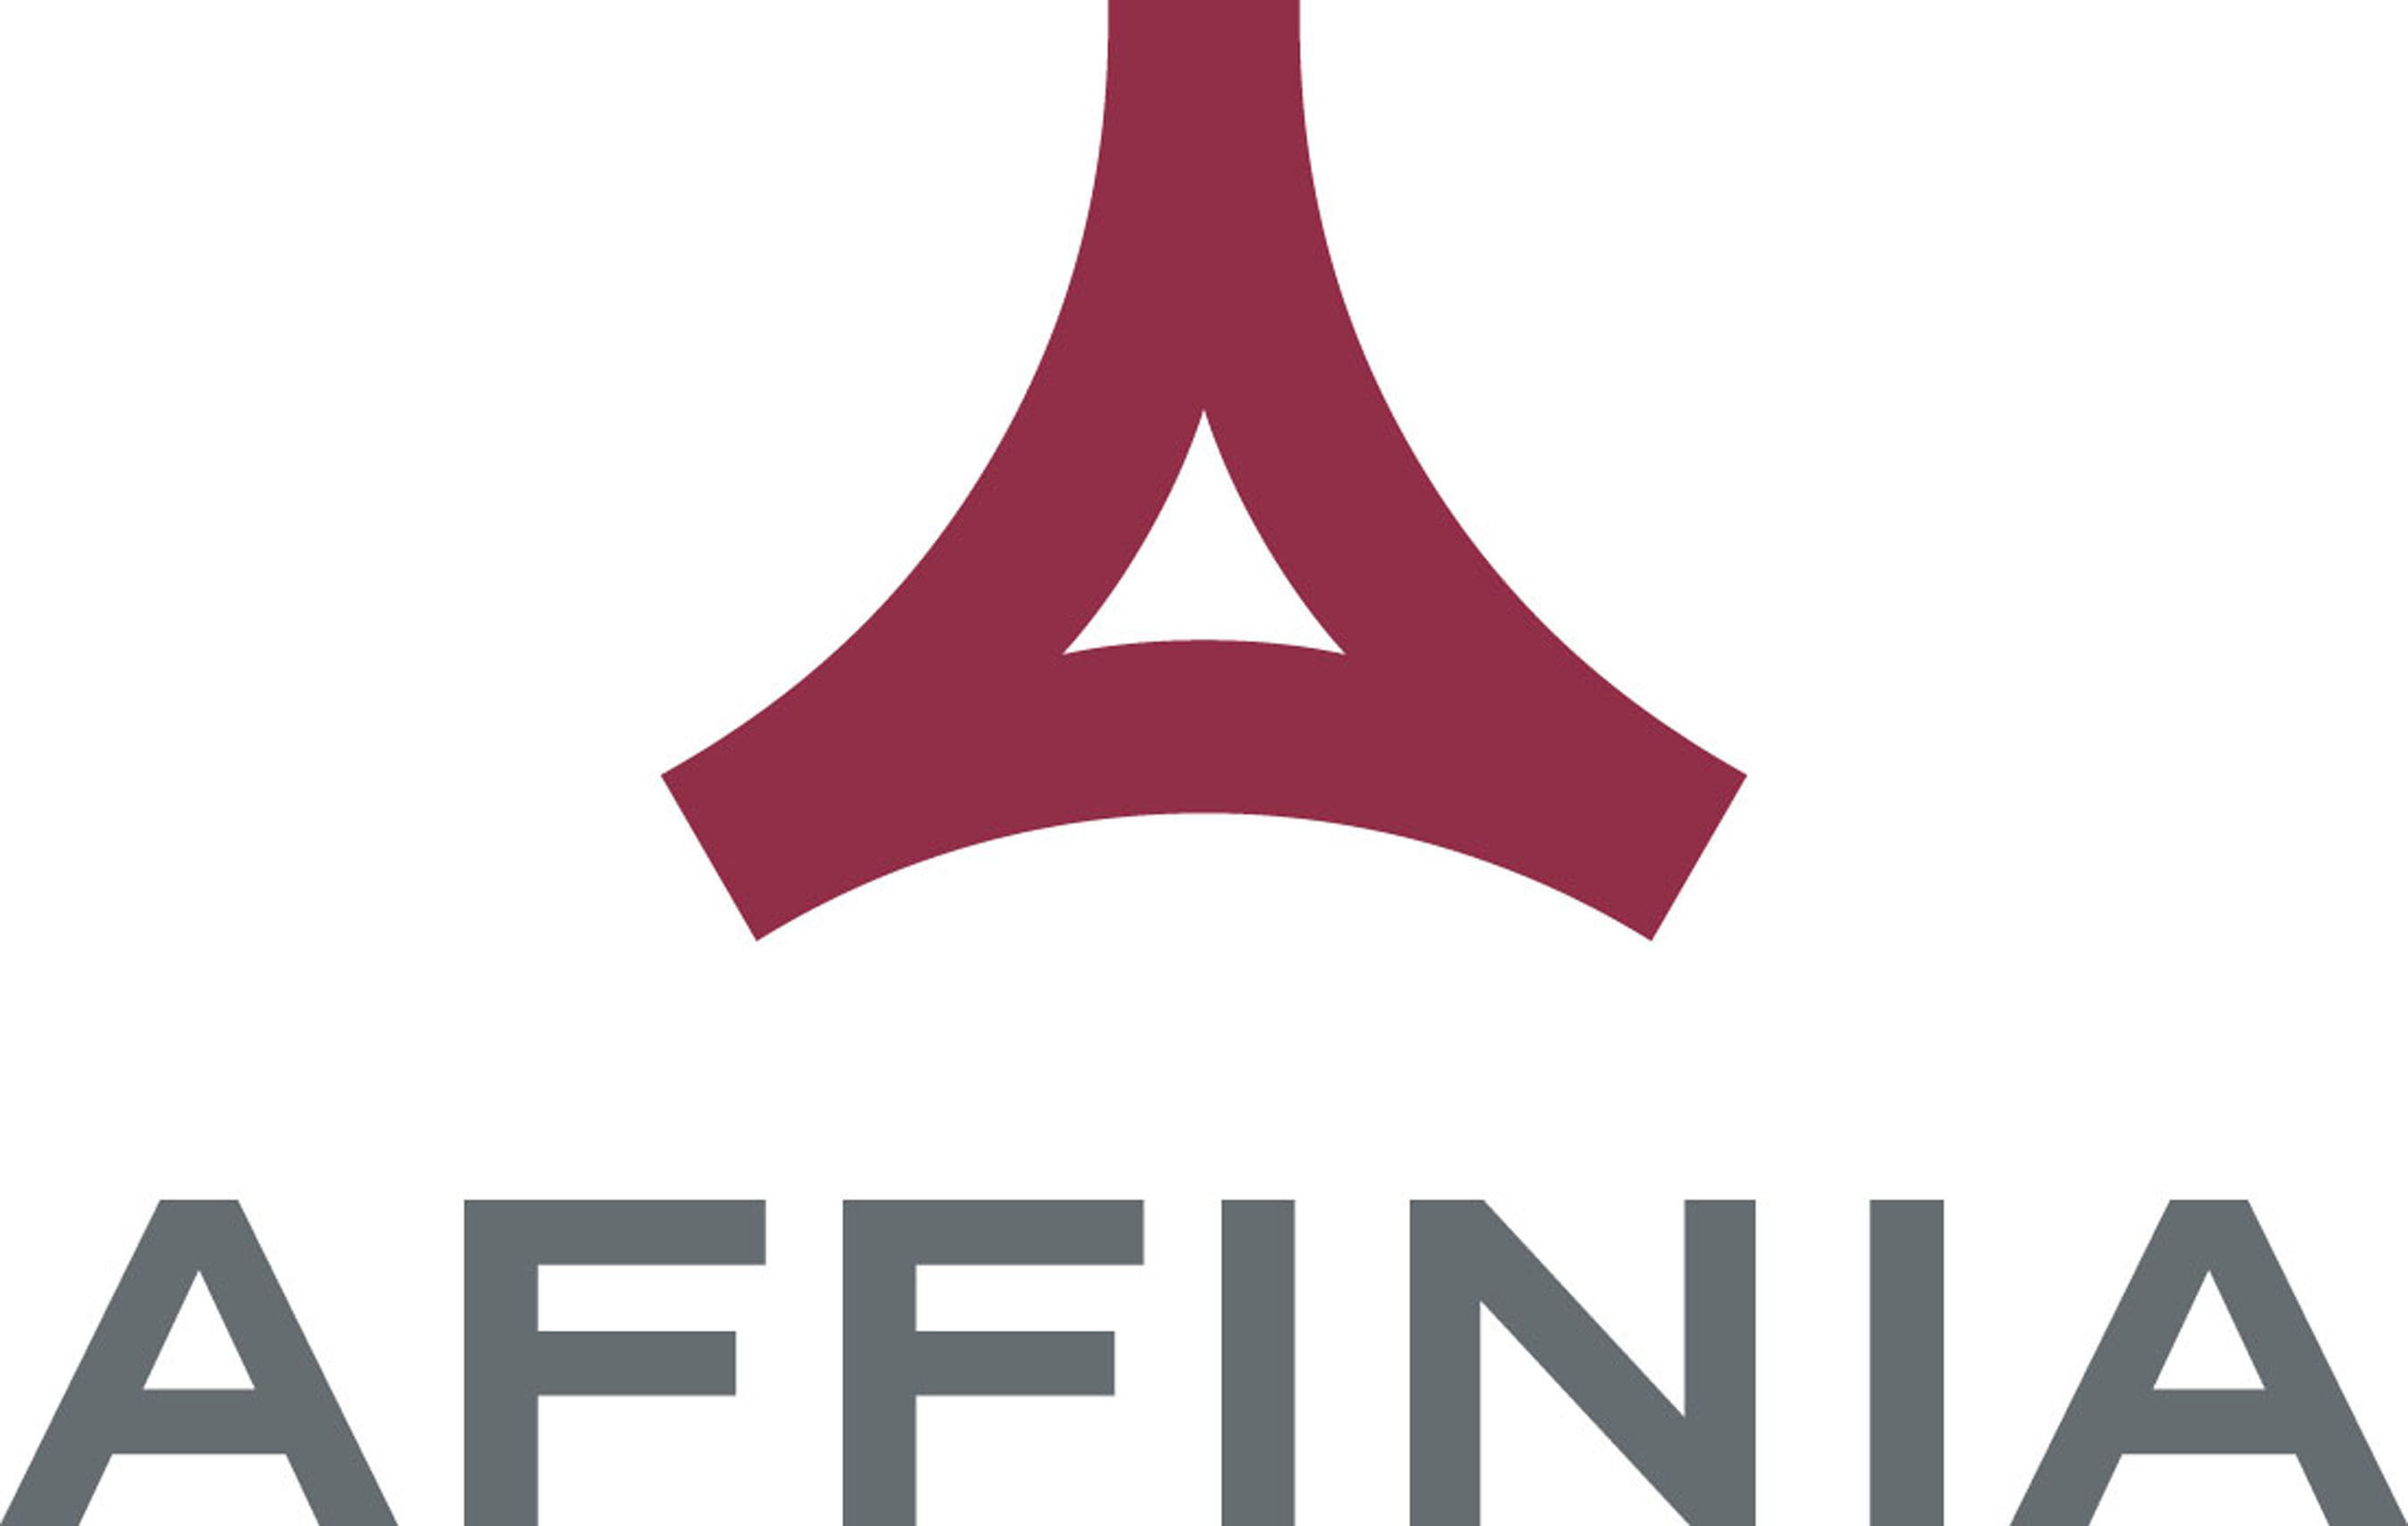 Affinia Group, Inc. - logo. (PRNewsFoto/Affinia Group, Inc.) (PRNewsFoto/)